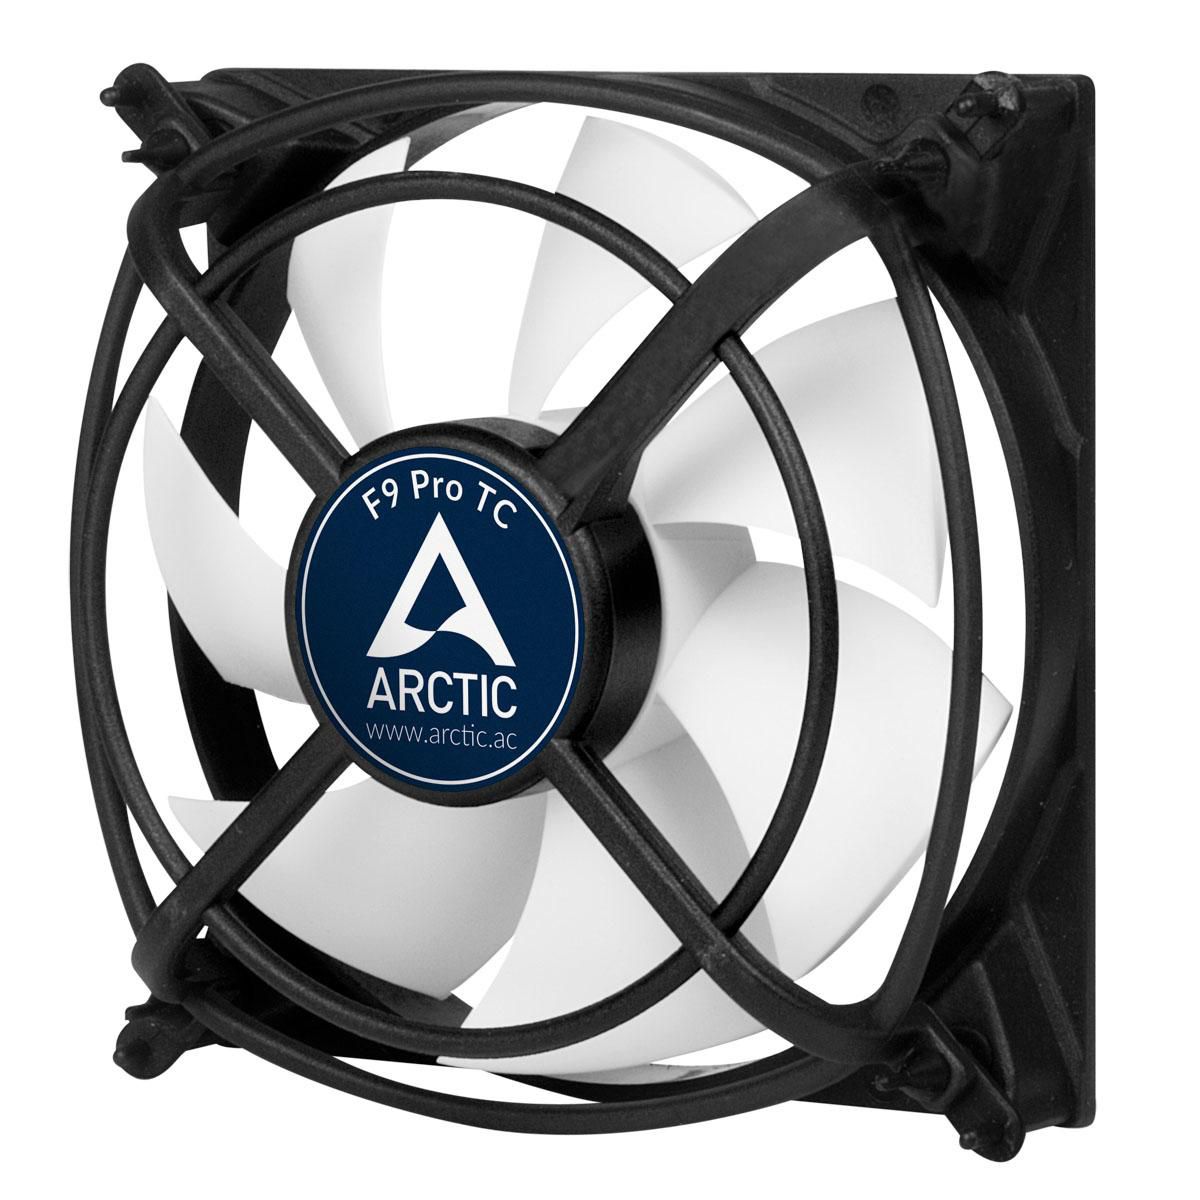 ARCTIC F9 Pro TC - 3-Pin temperaturgesteuerter Gehäuselüfter mit Pro-Gehäuse - 92mm retail